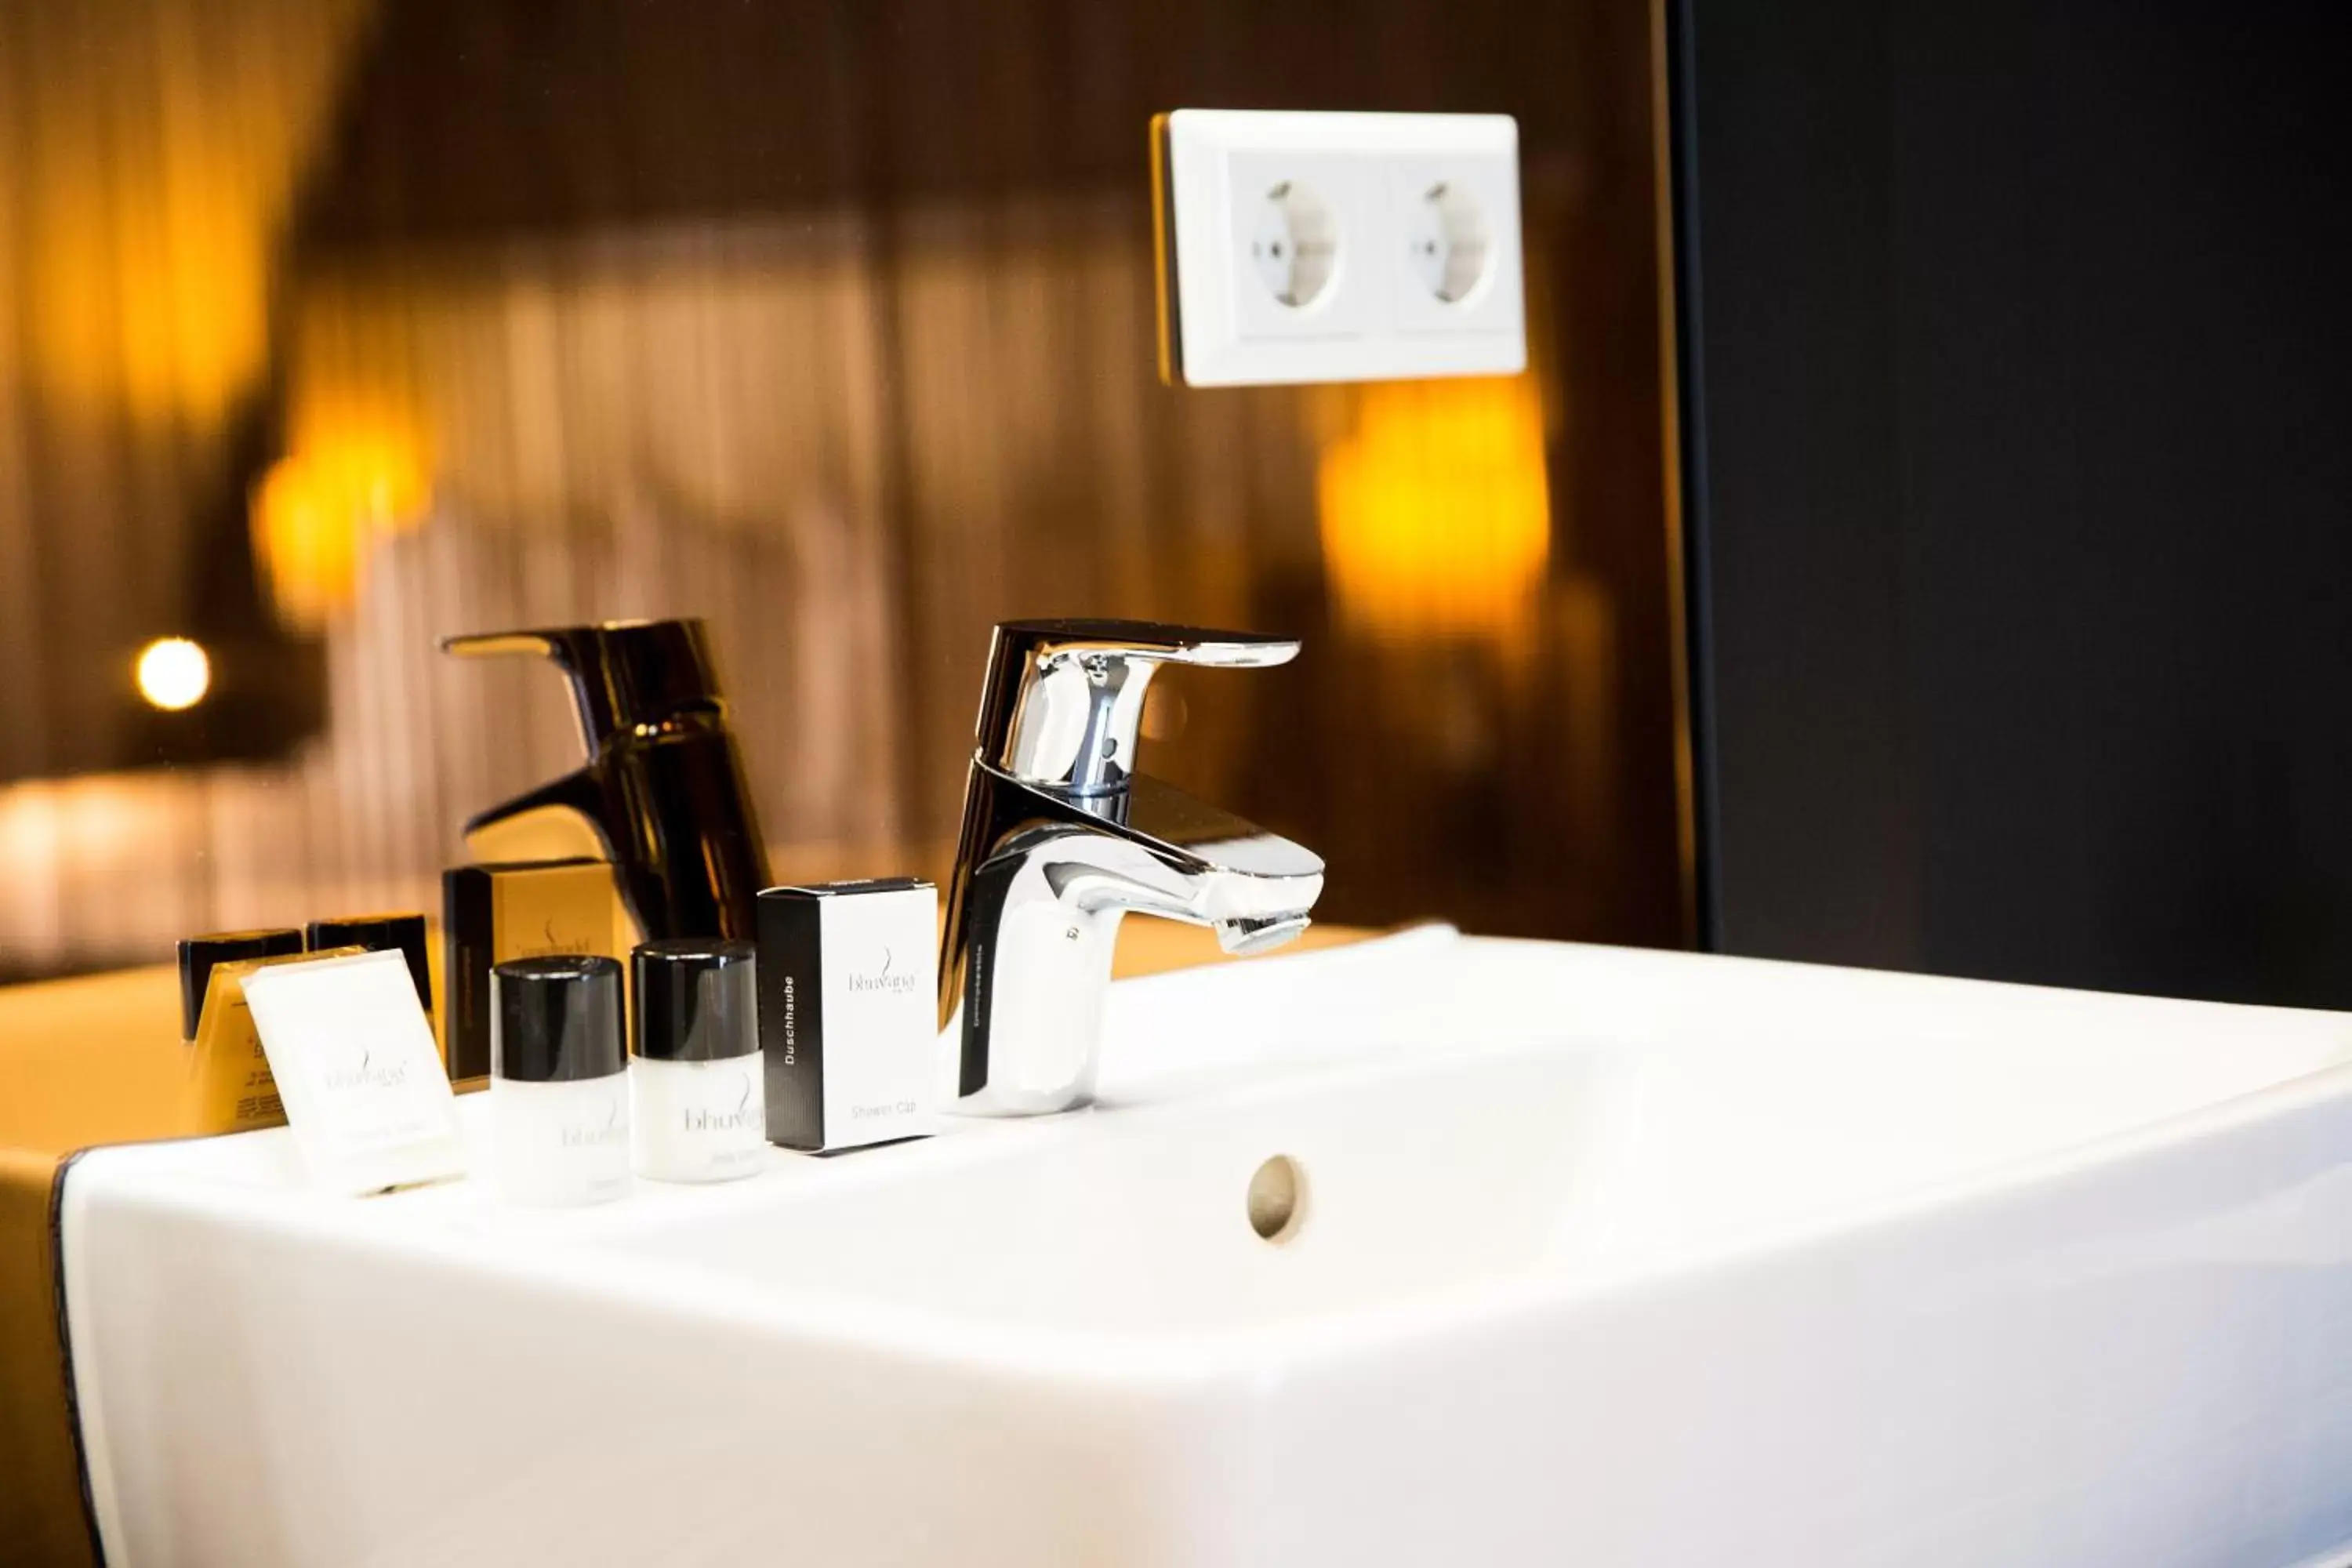 Bathroom in Best Western Plus City Hotel Gouda